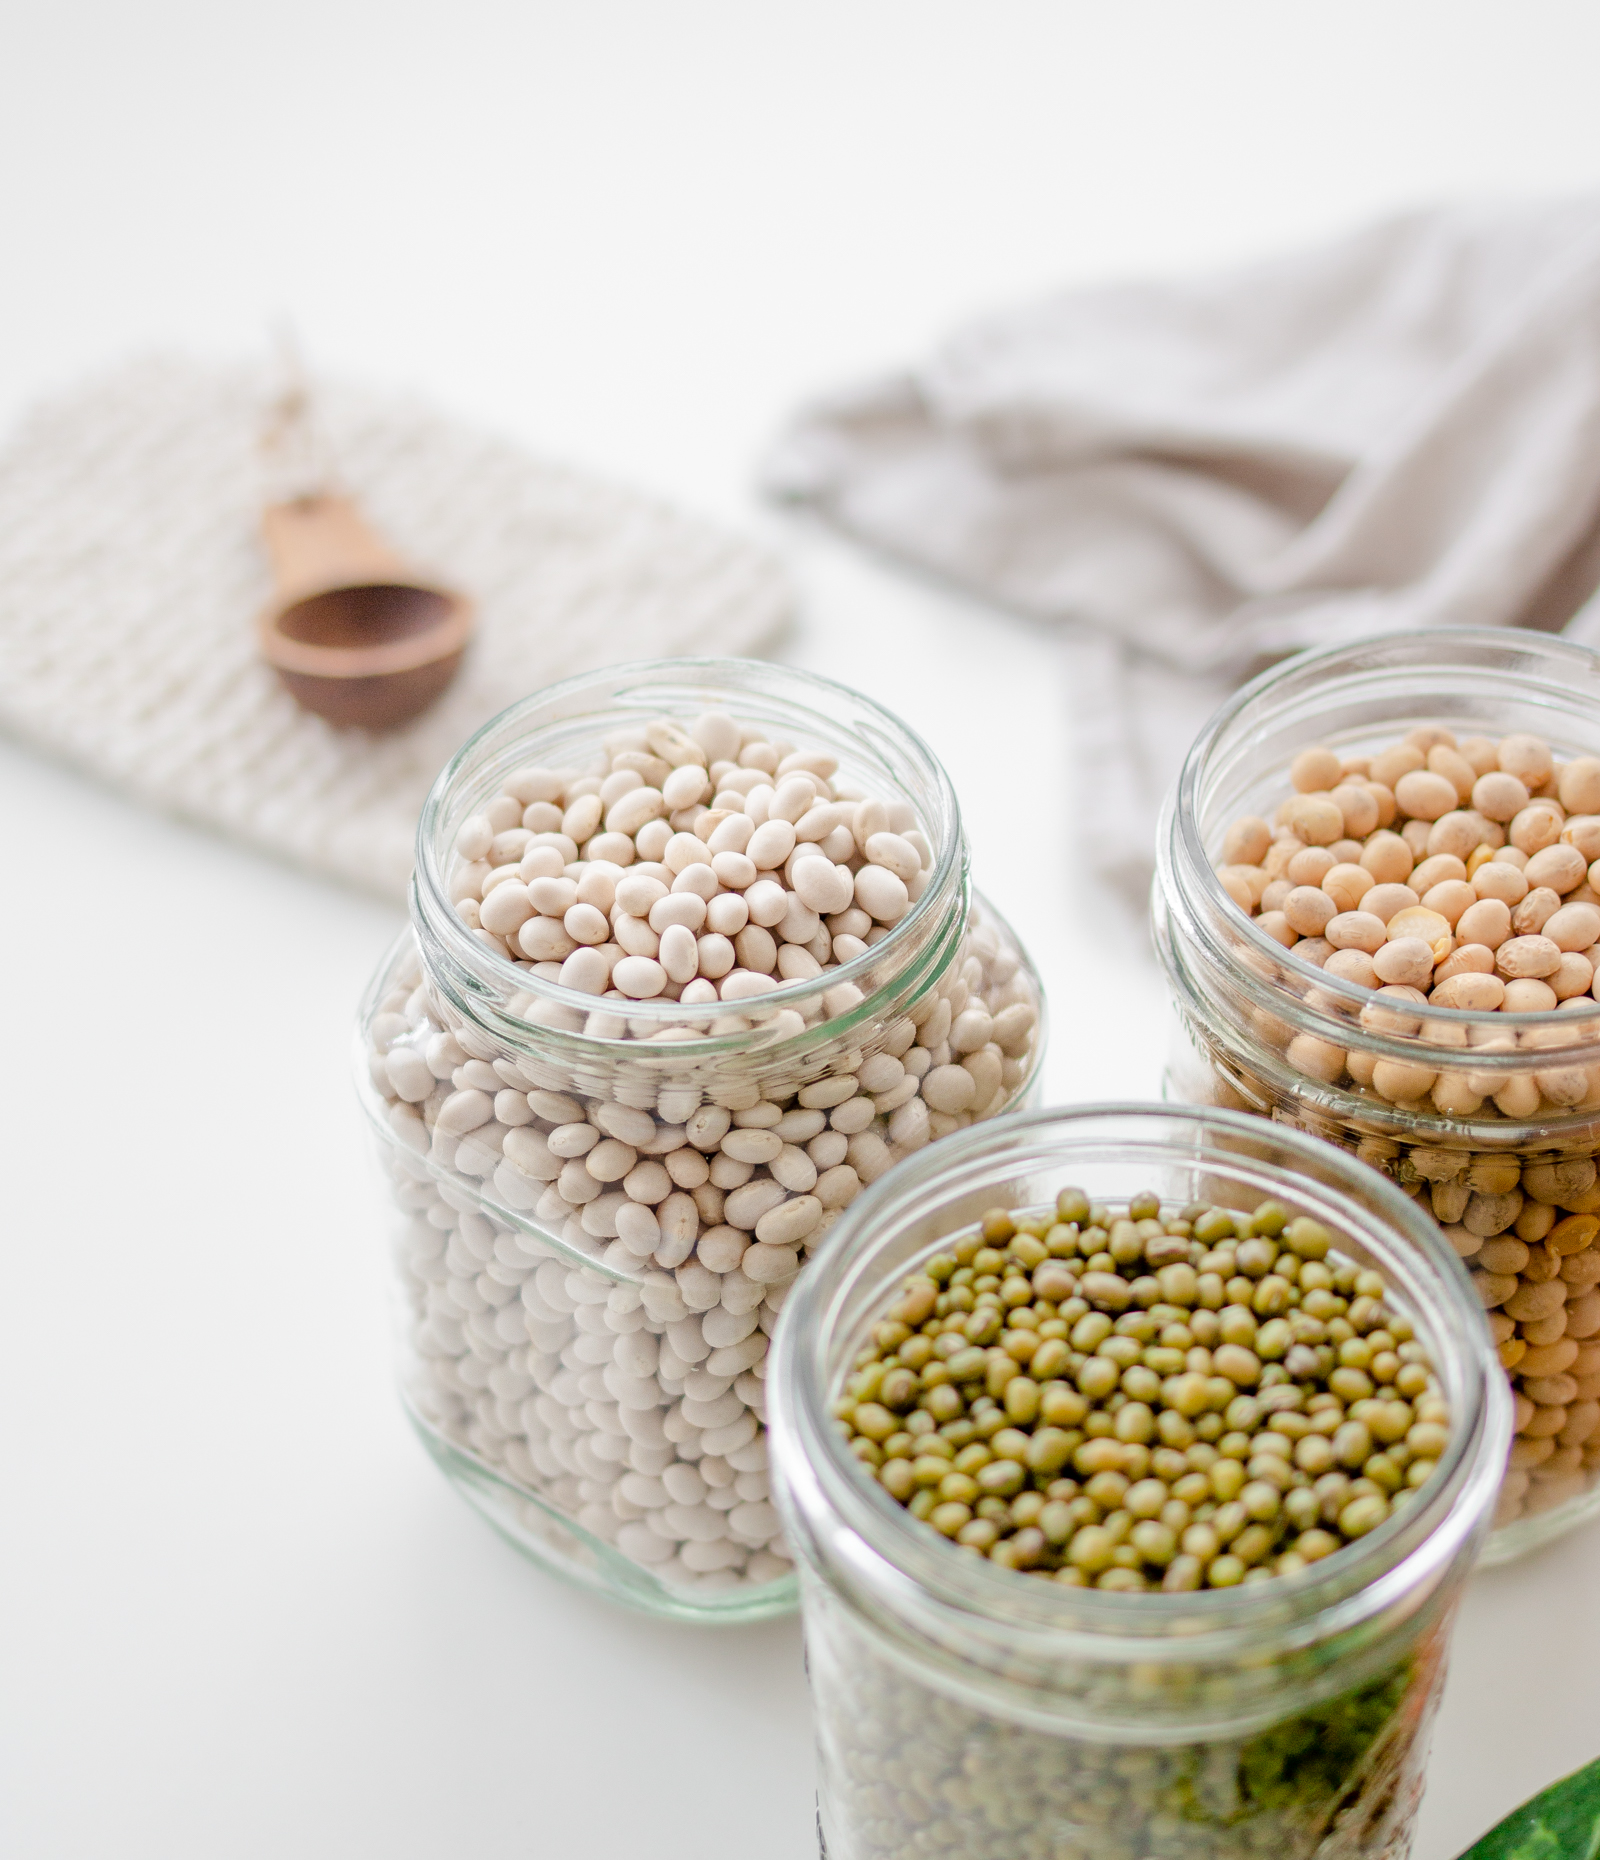 SWISSOJA - Découvrez les avantages nutritionnels de la graine de soja